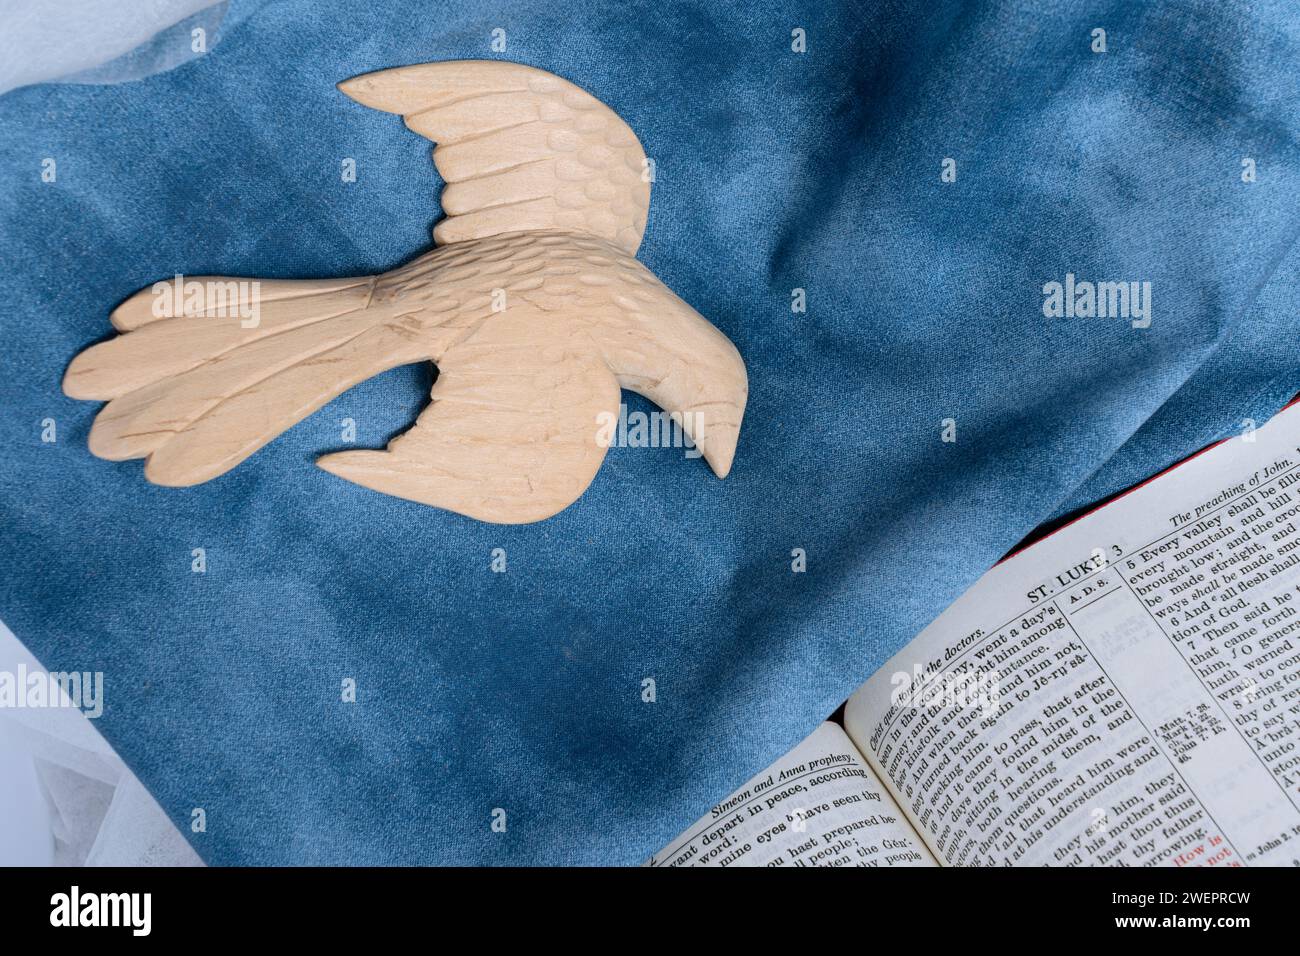 La figure du Saint-Esprit descend sur la lecture ouverte de la Bible de Saint Luc. La colombe est une sculpture en bois vue avec un fond bleu de tissu représentant le ciel. Banque D'Images